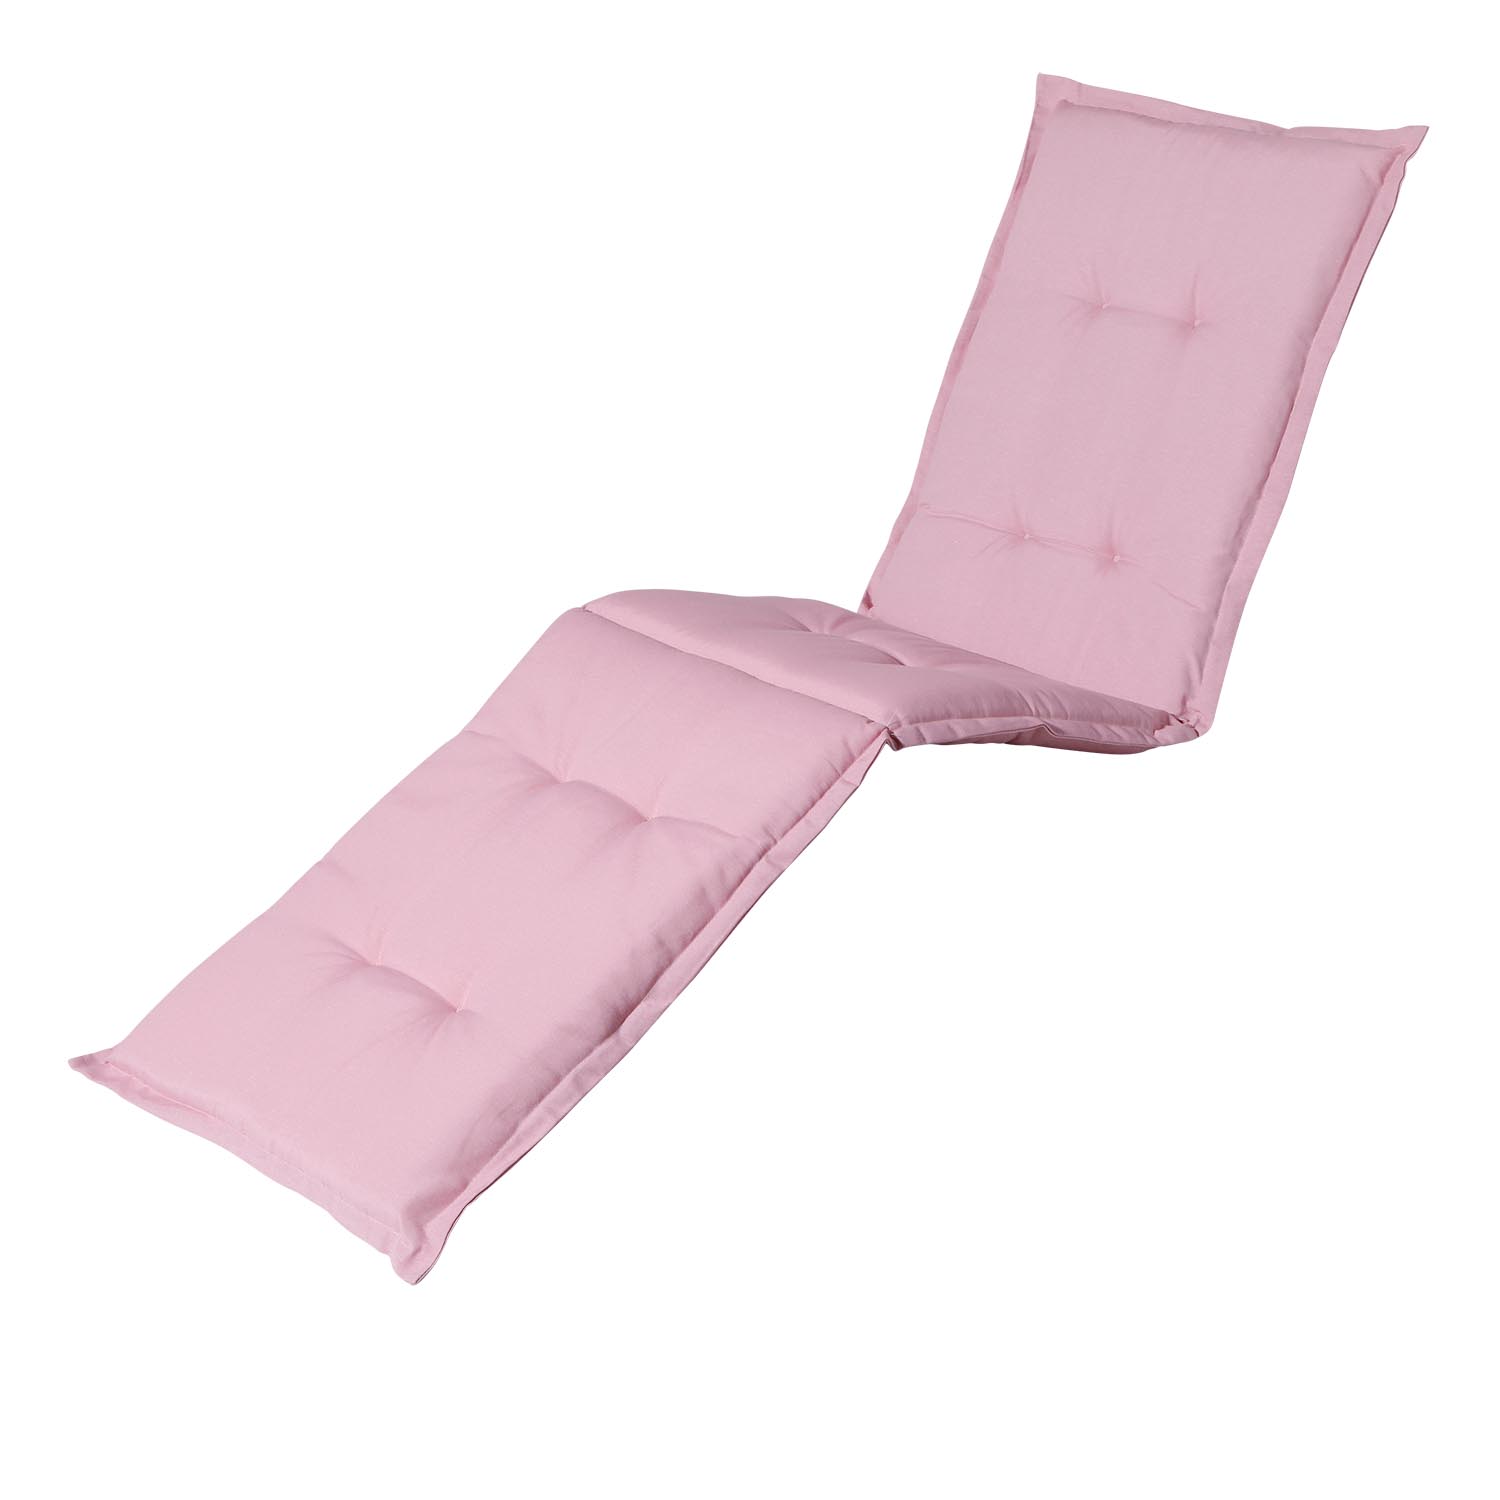 Ligbedkussen - Panama soft pink